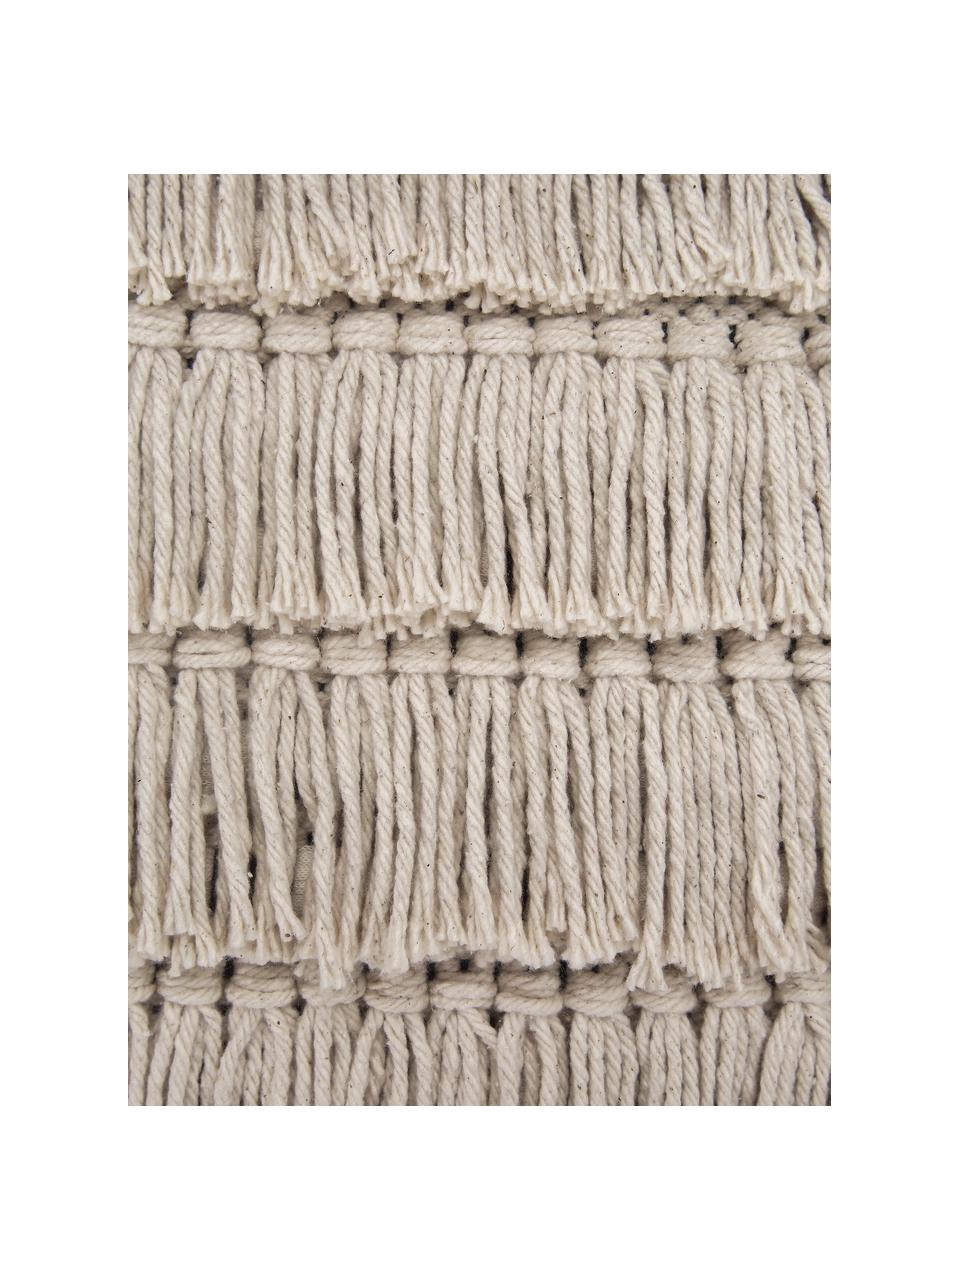 Boho Kissen Tallara, mit Inlett, Bezug: 100% recycelte Baumwolle, Hellbeige, 45 x 45 cm